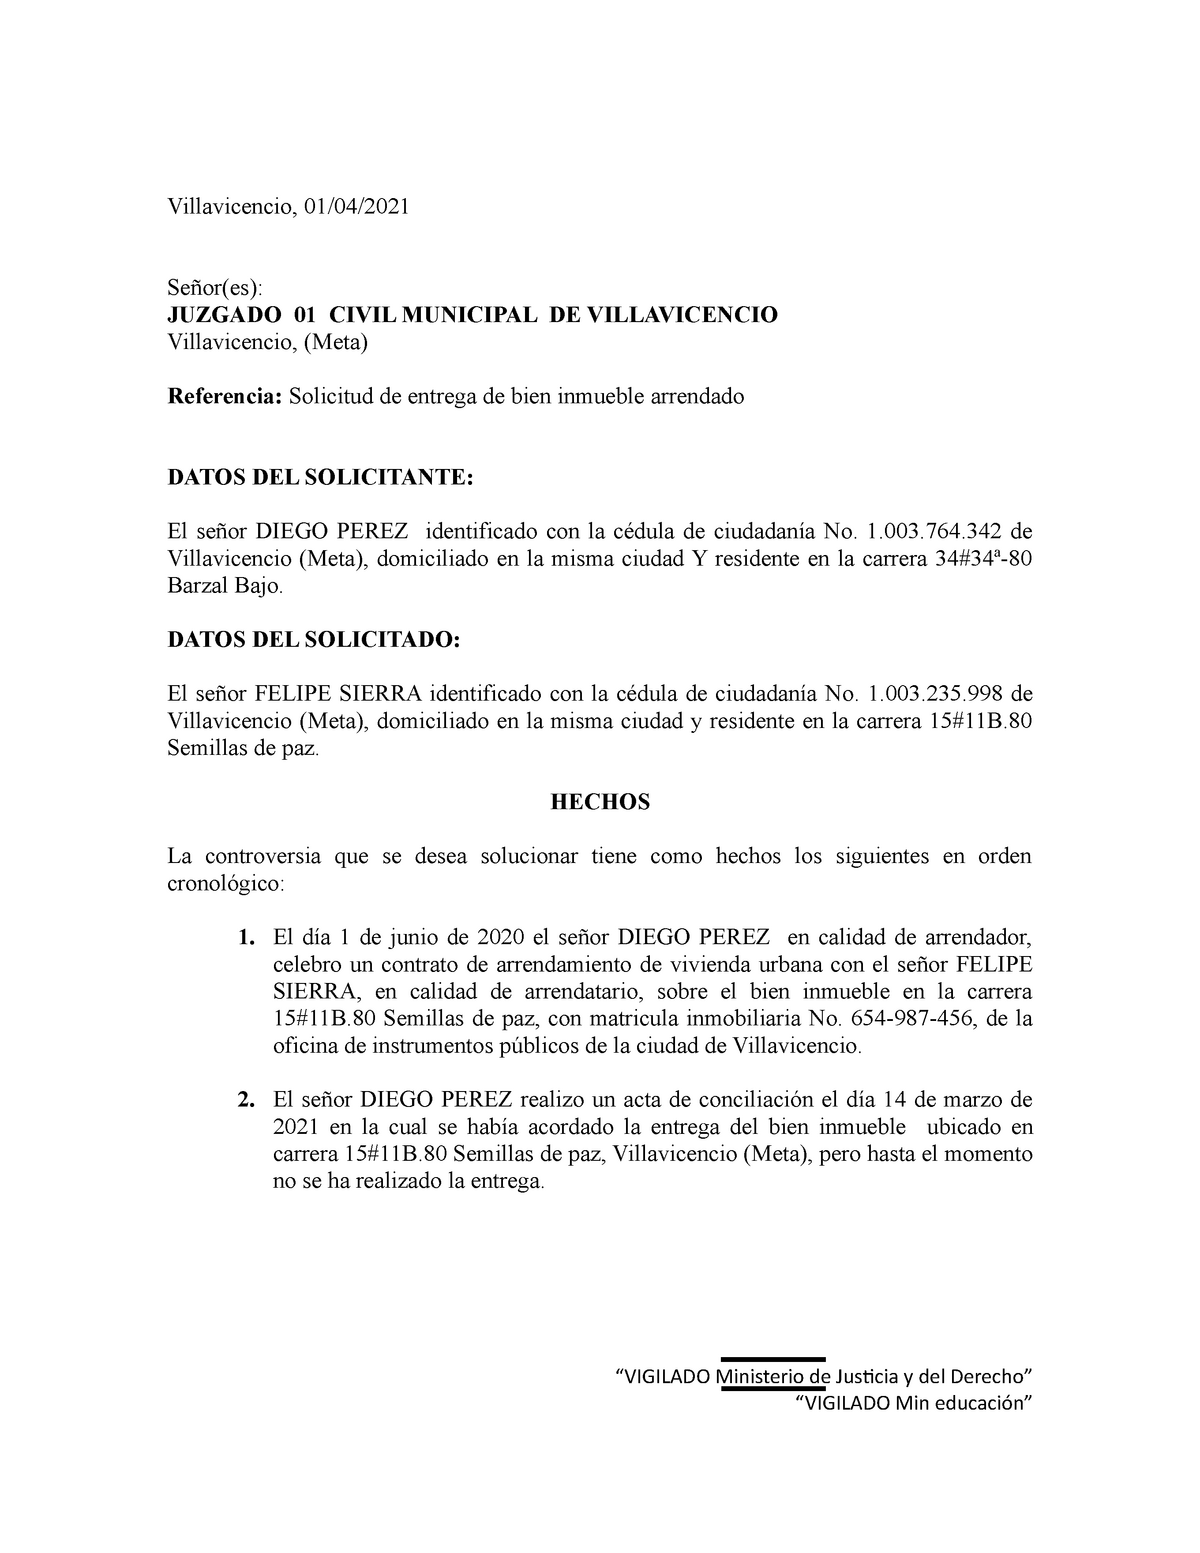 Solicitud de entrega de inmueble - Villavicencio, 01/04/ Señor(es): JUZGADO  01 CIVIL MUNICIPAL DE - Studocu